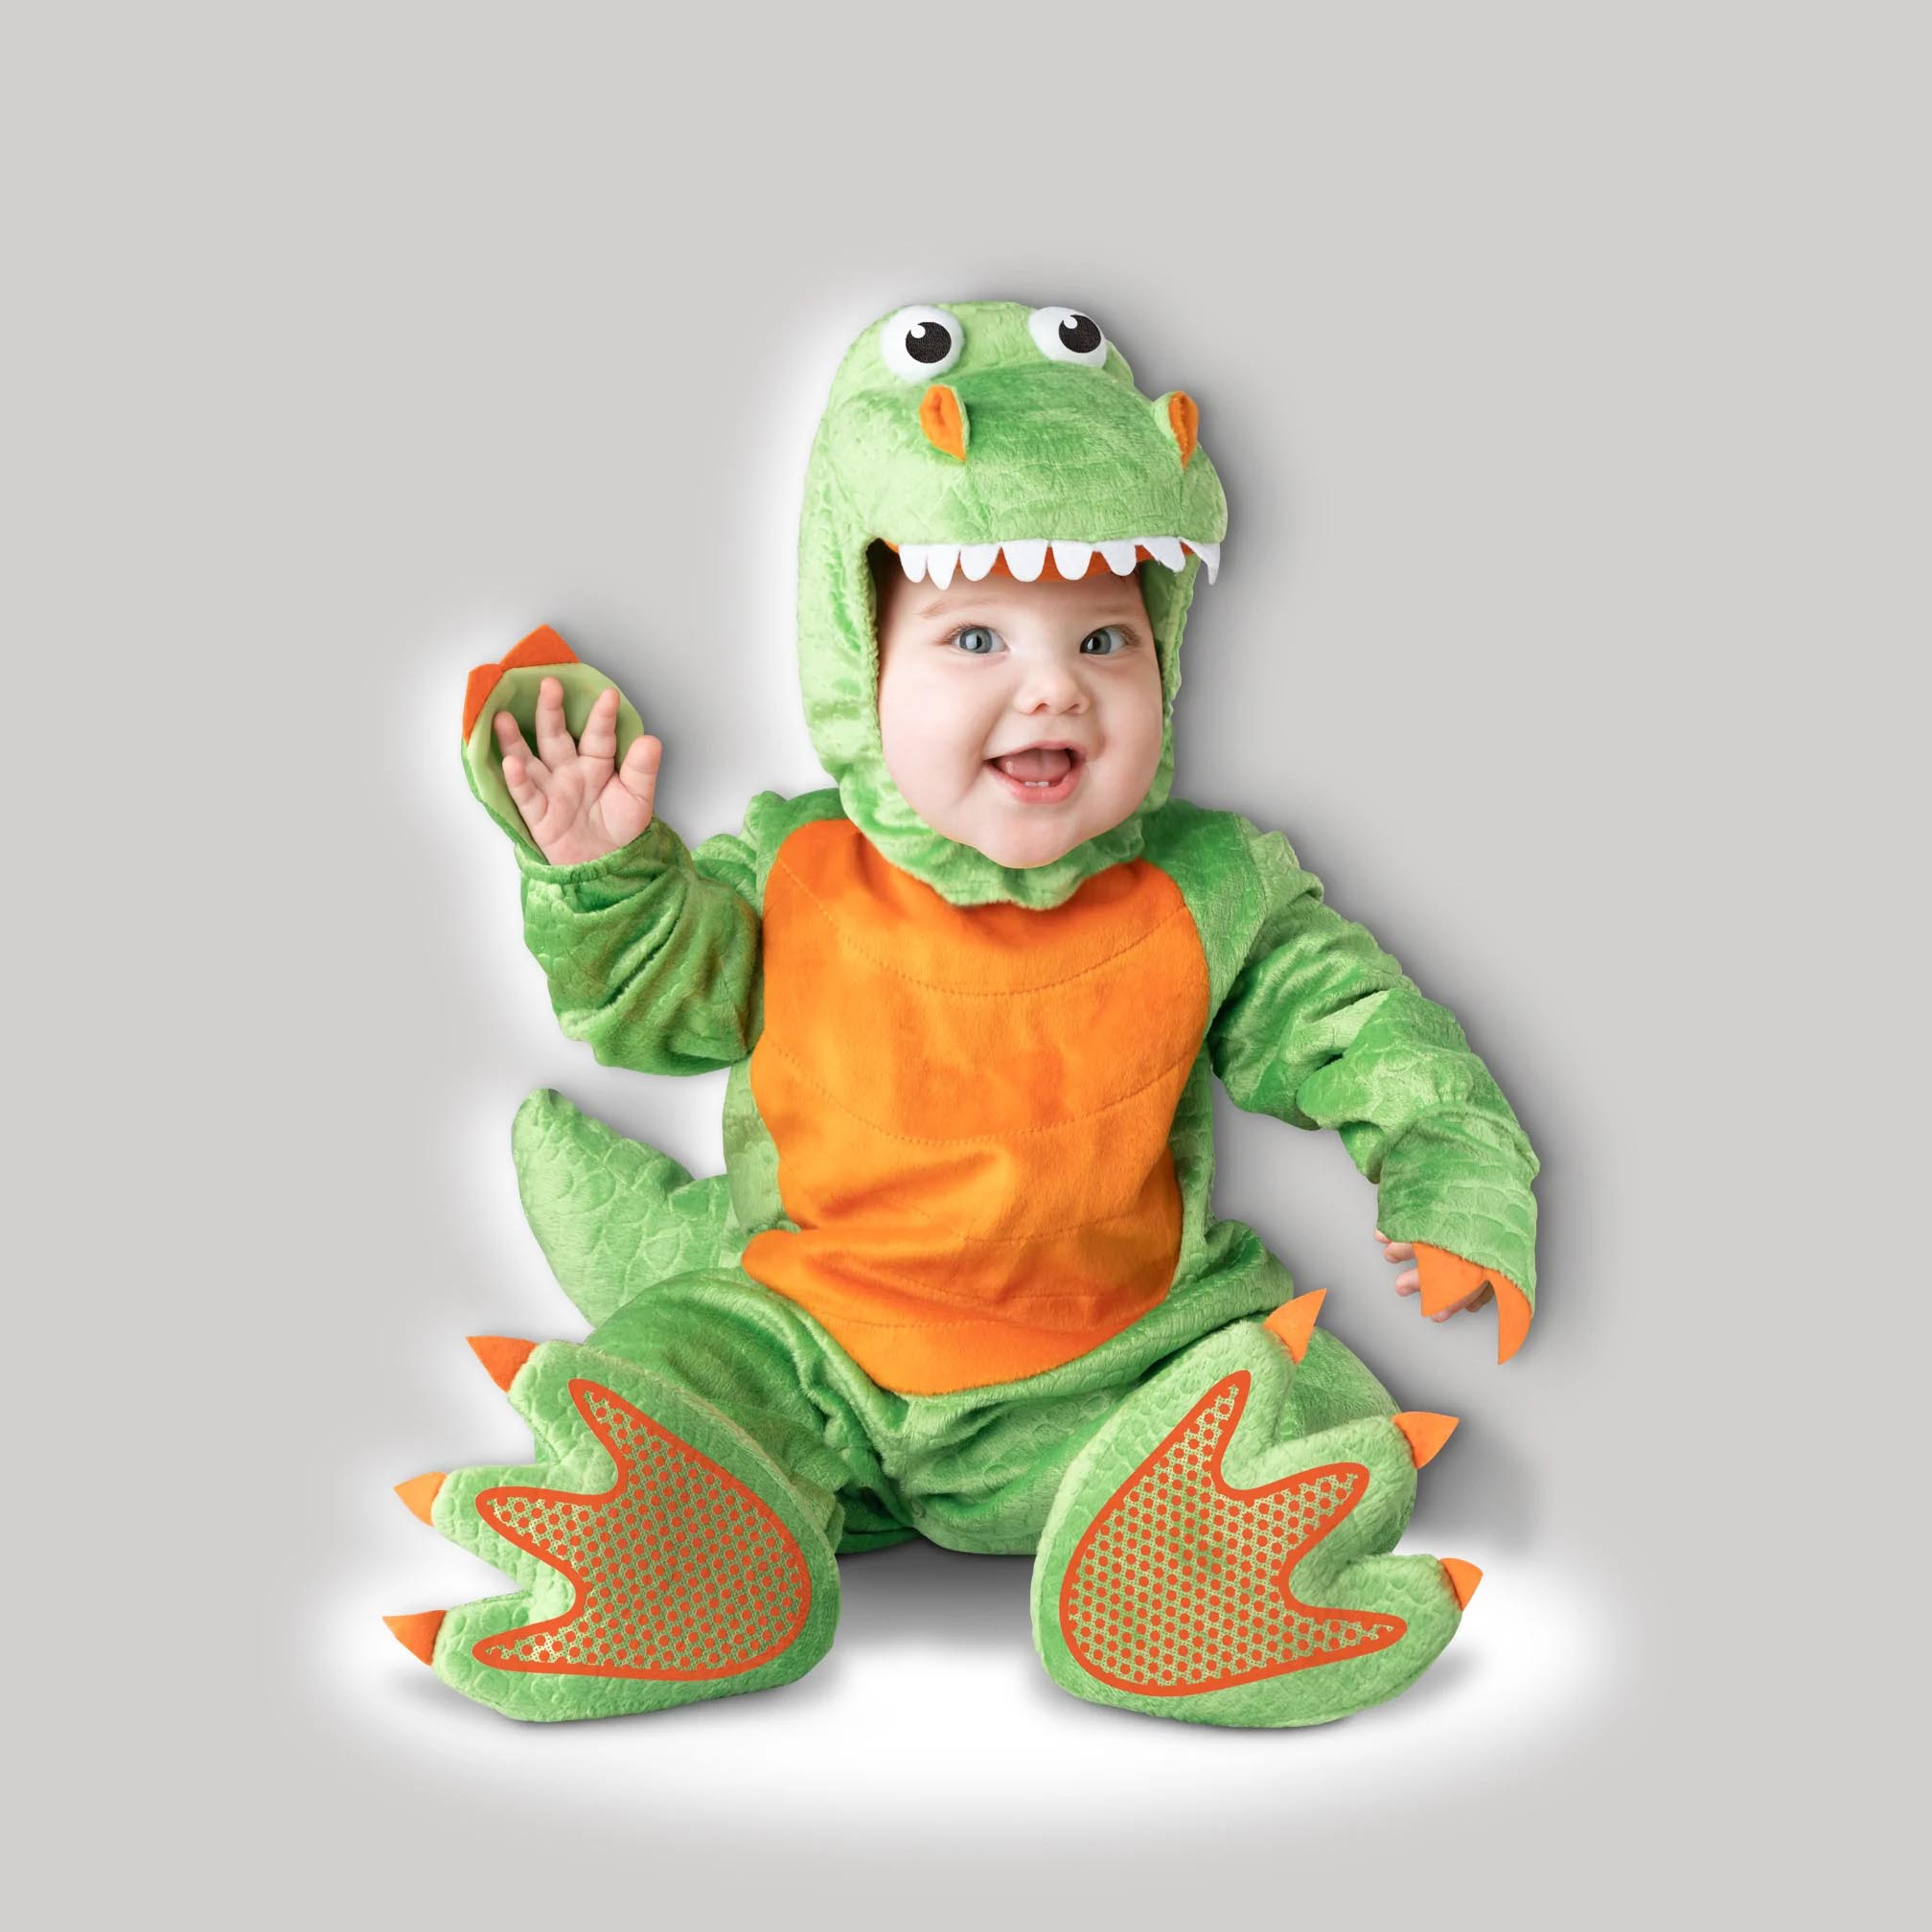 Disfraz de dinosaurio bebé -Clásico: Disfraces niños,y disfraces